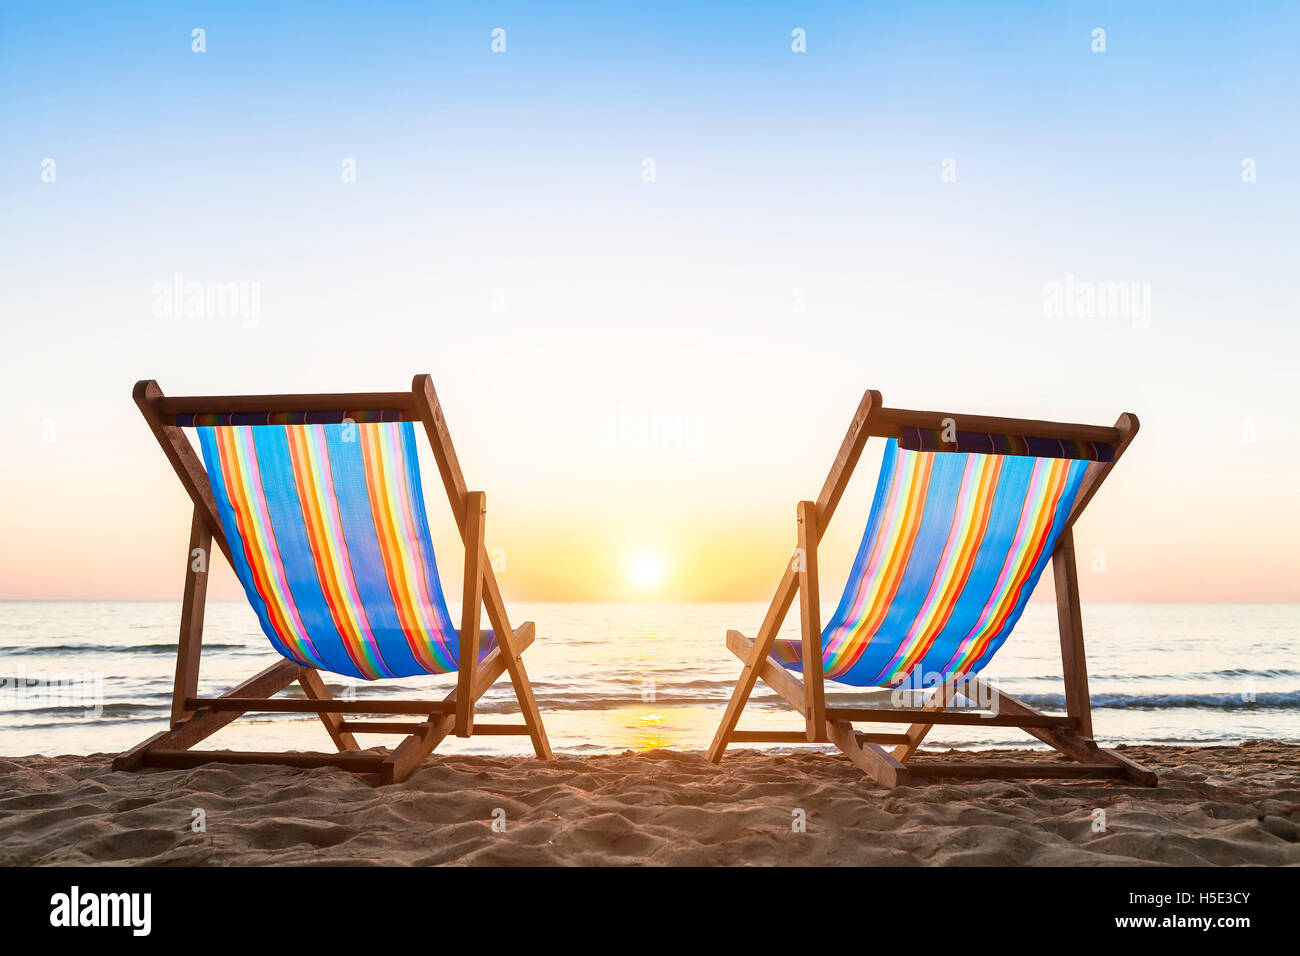 Zwei Liegestühle auf einer tropischen Sandstrand mit schönen bunten Sonnenuntergang Stockfoto